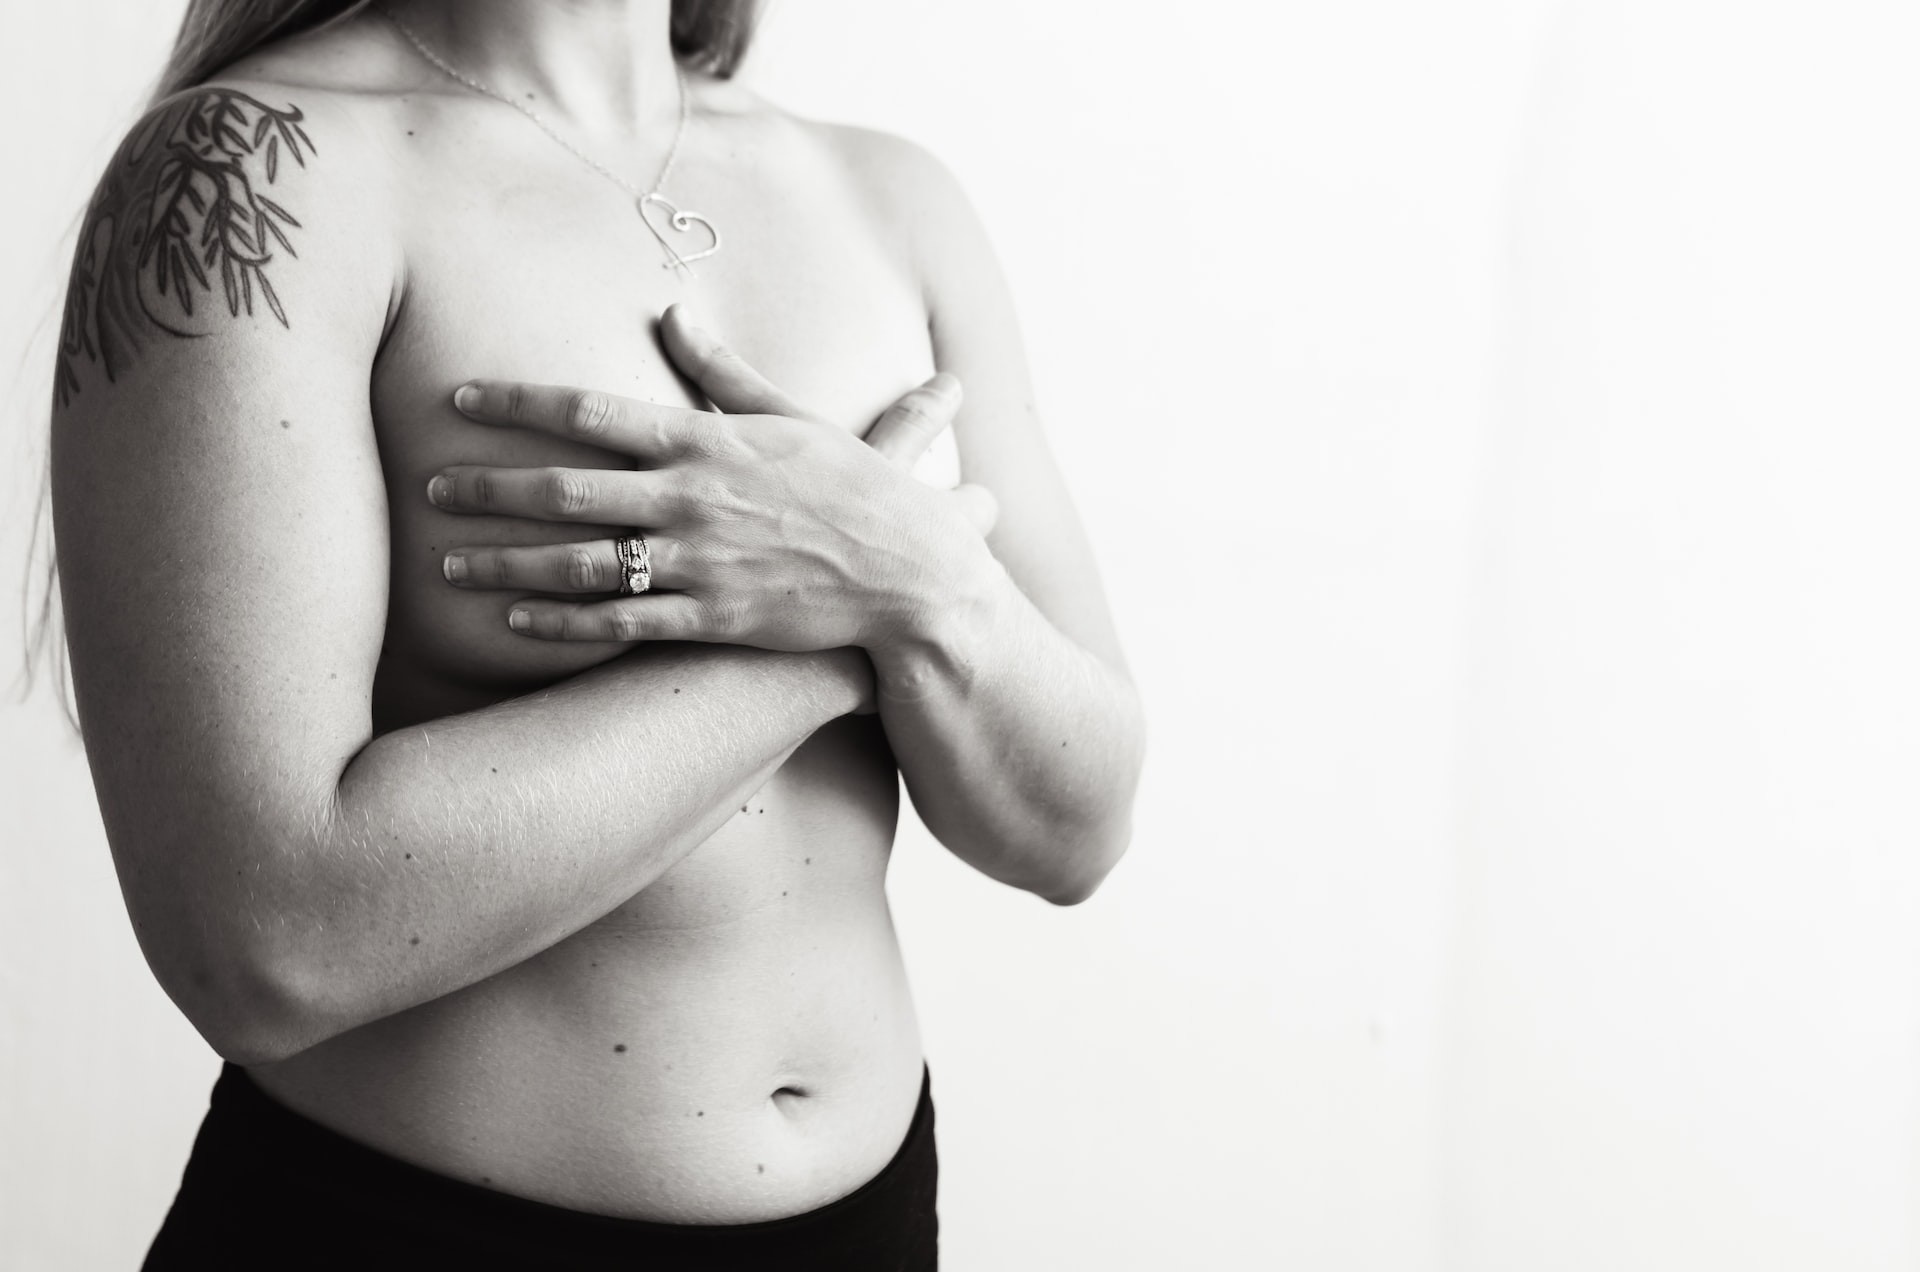 Maioria das mulheres desconhece sinais de câncer de mama inflamatório (Foto: Rebekah Vos/Unsplash)